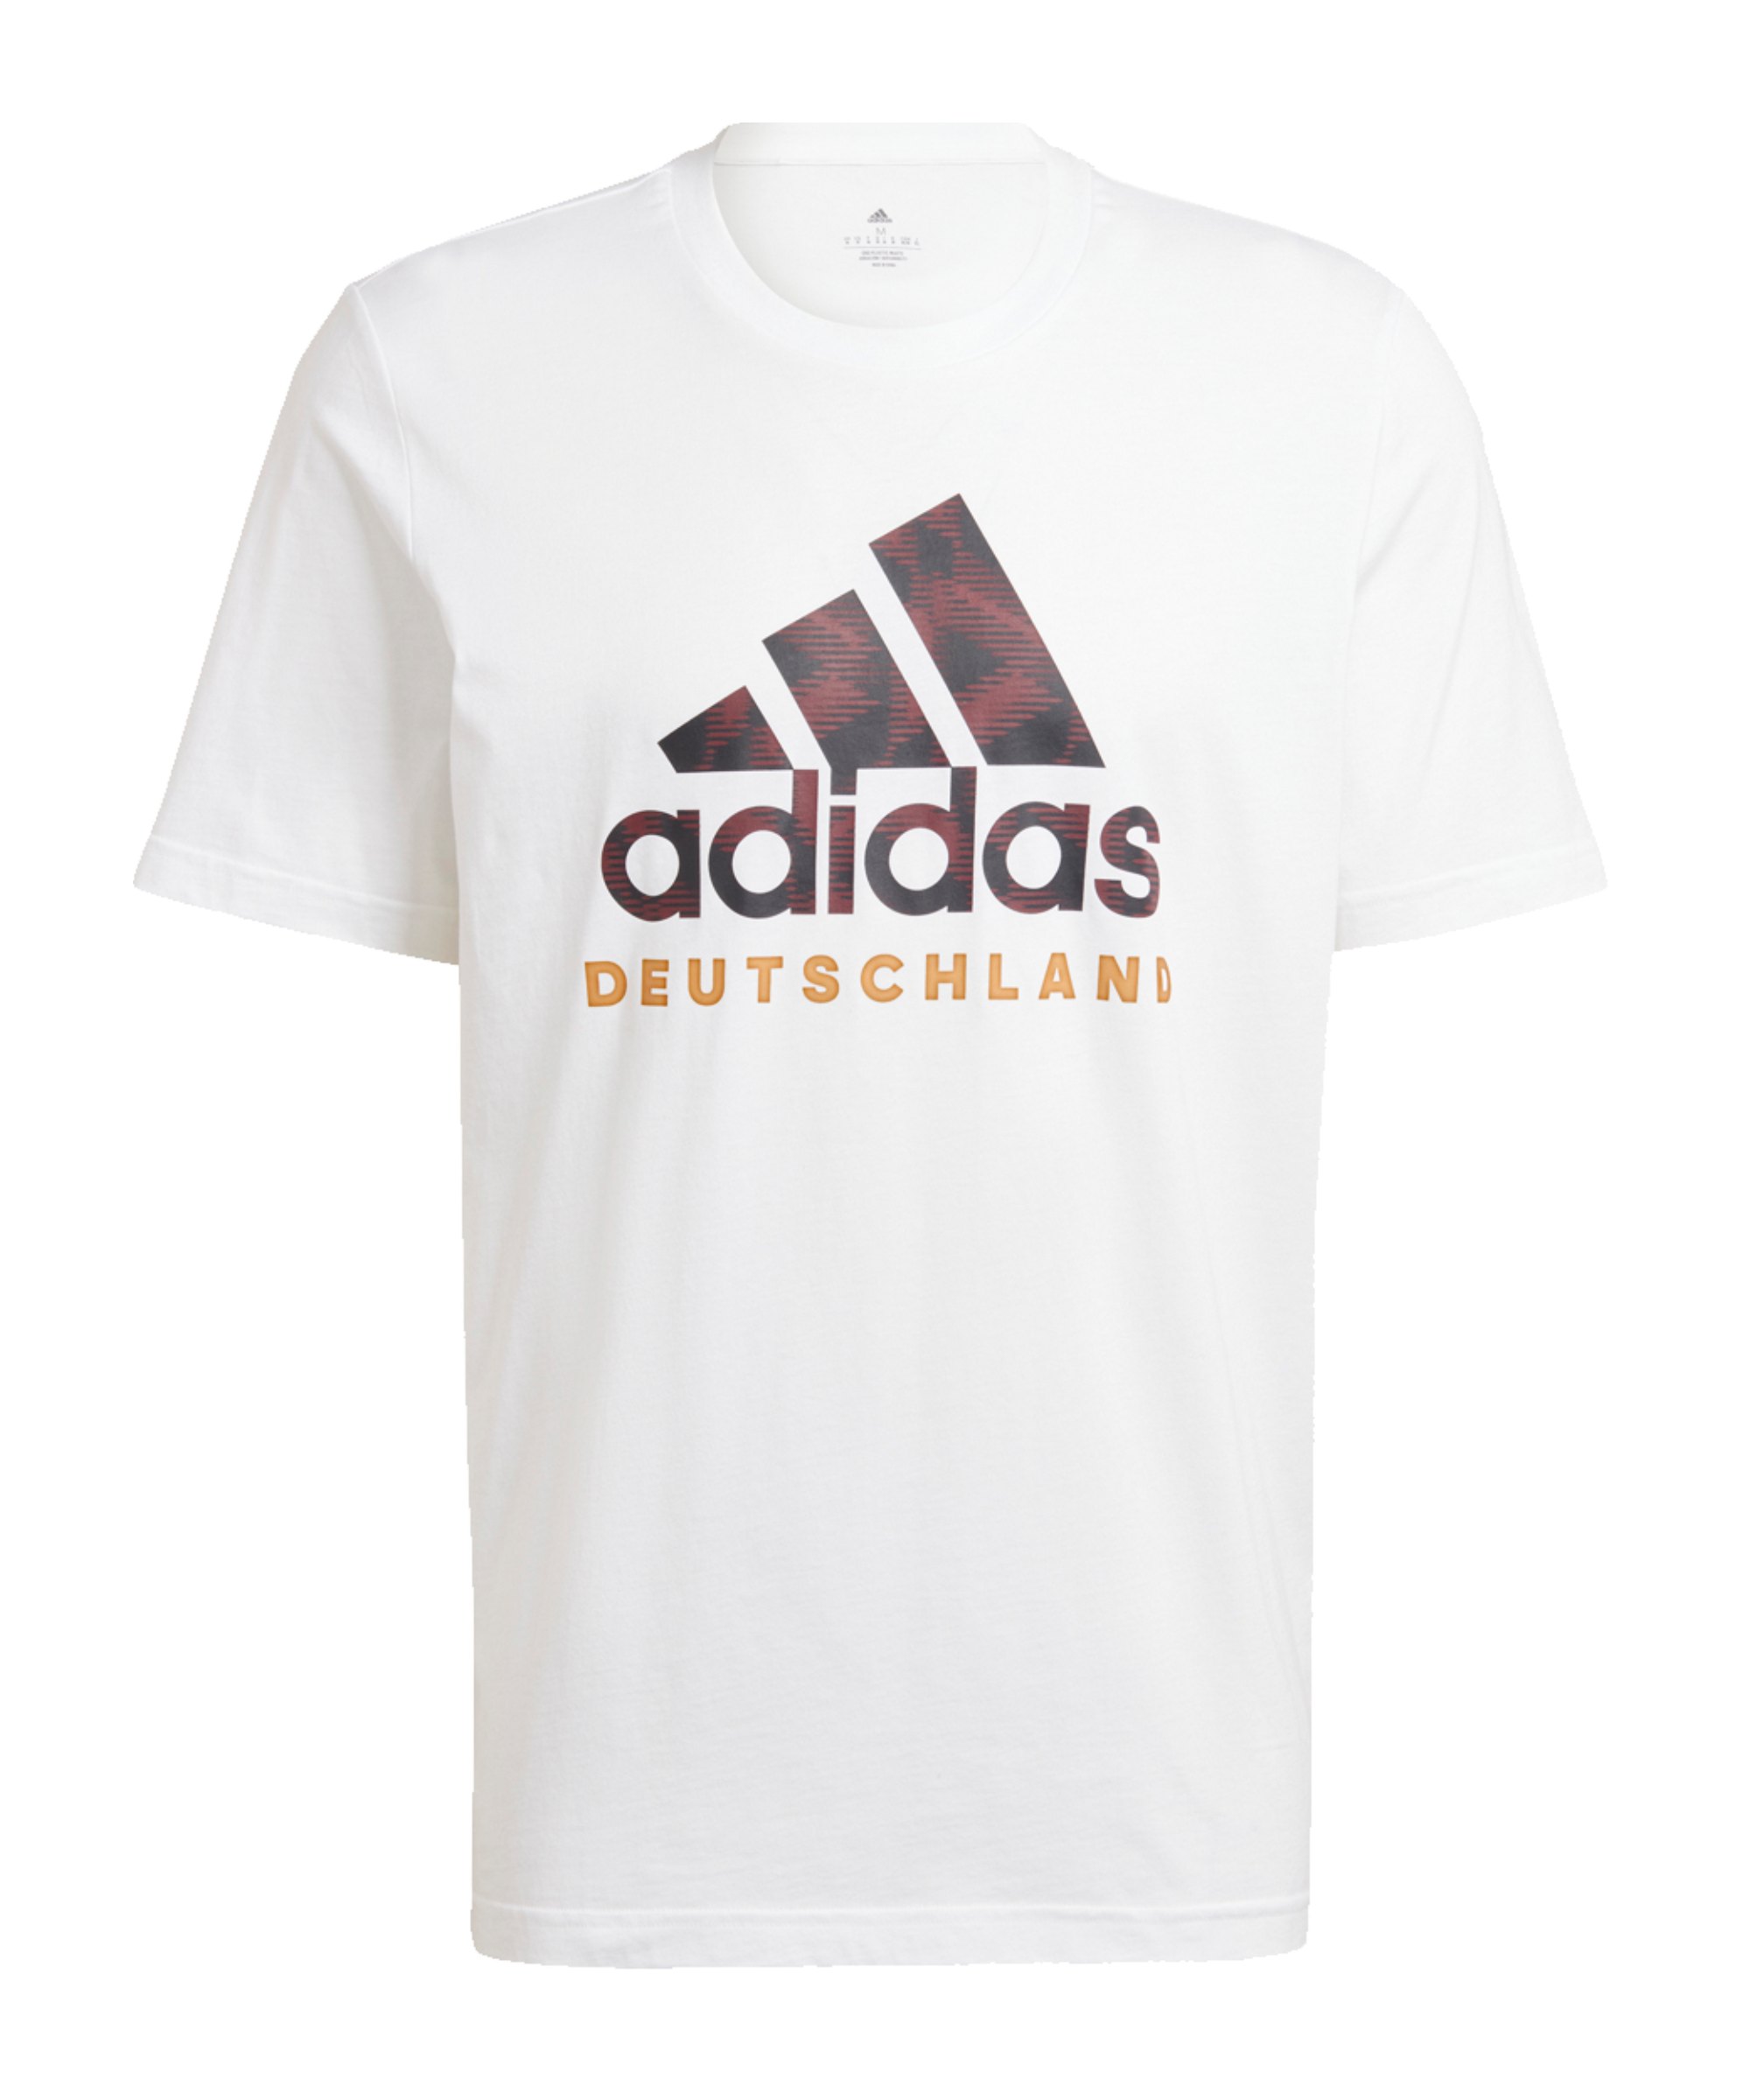 adidas DFB Deutschland DNA Graphic T-Shirt Weiss Schwarz - weiss